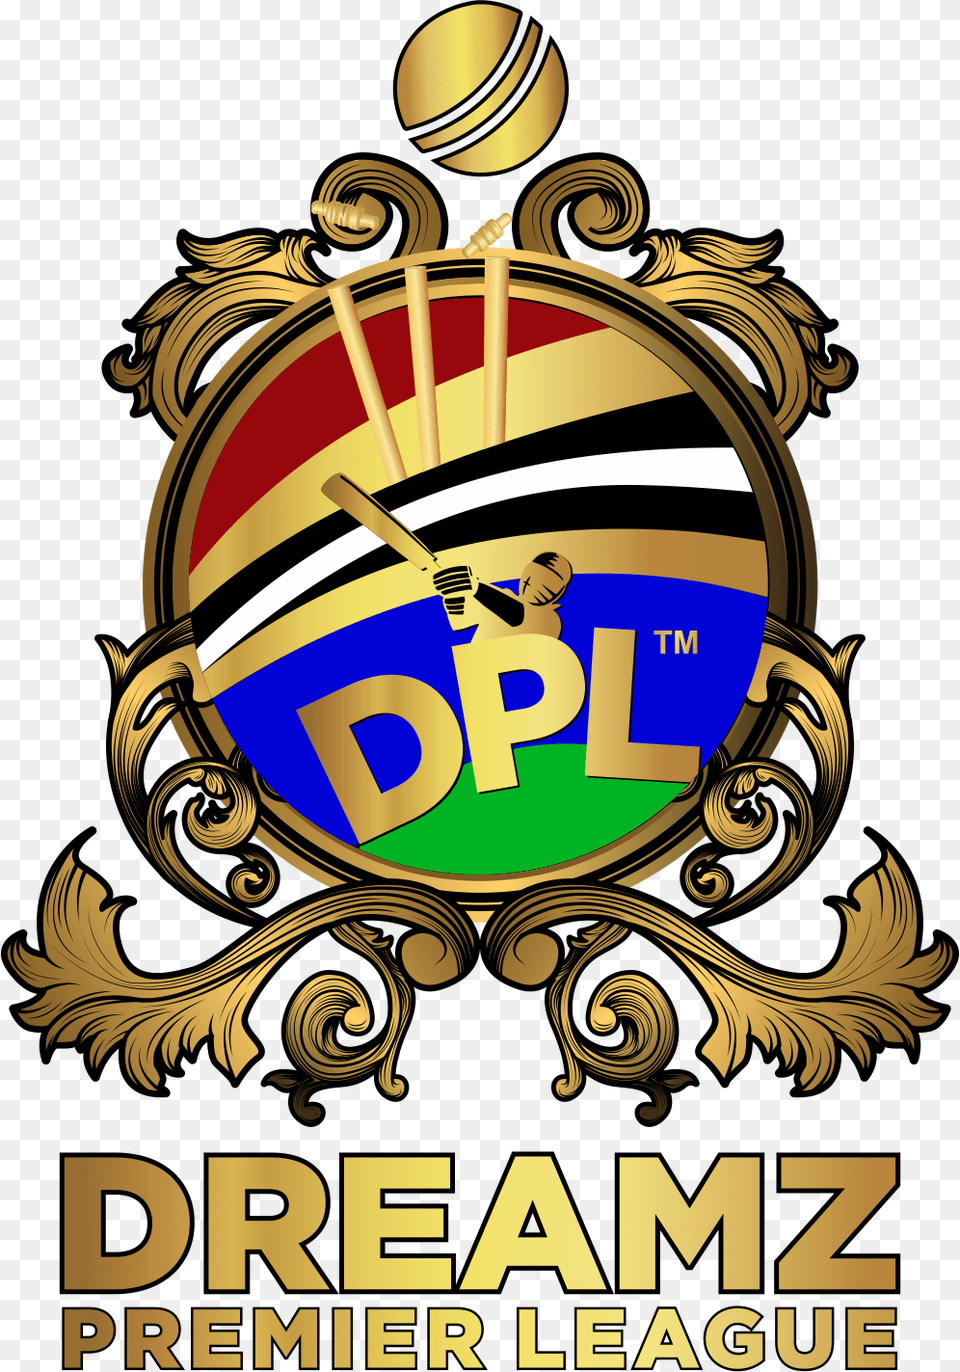 Next Dreamz Premier League, Logo, Badge, Emblem, Symbol Png Image